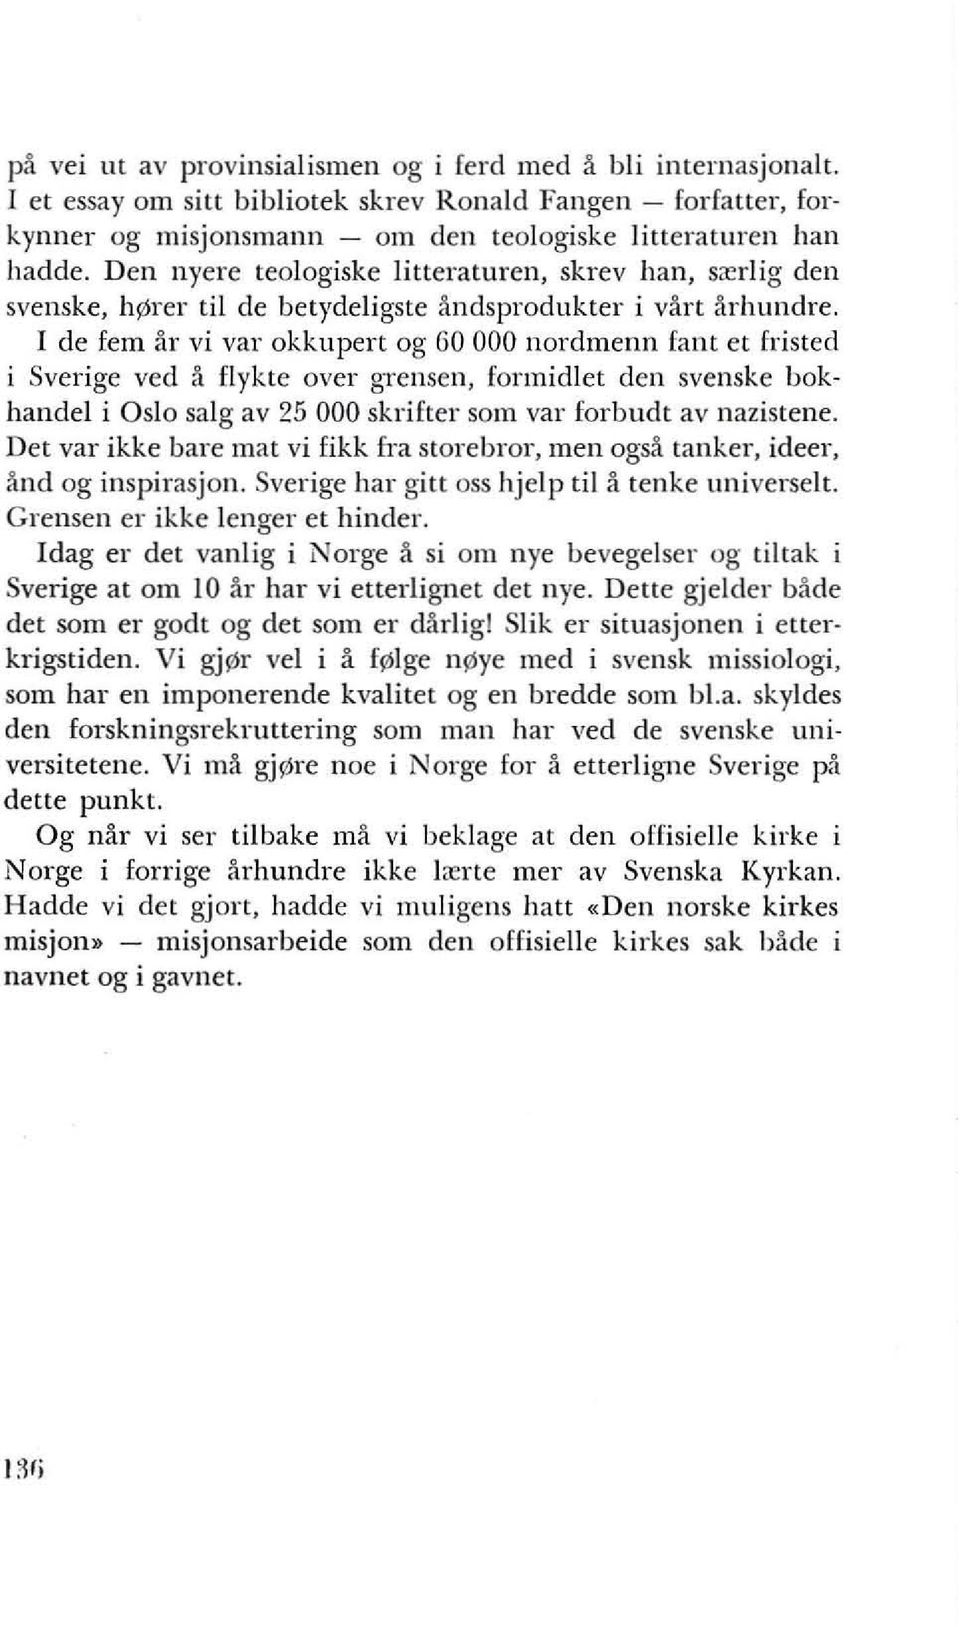 I de fem ar vi var okkupert og GO 000 nordmenn fant et fristed i Sverige ved a f1ykte over gtensen. formidlet den svenske bokhandel i Oslo salg av 25 000 skrifter som var forblldt av nazistene.